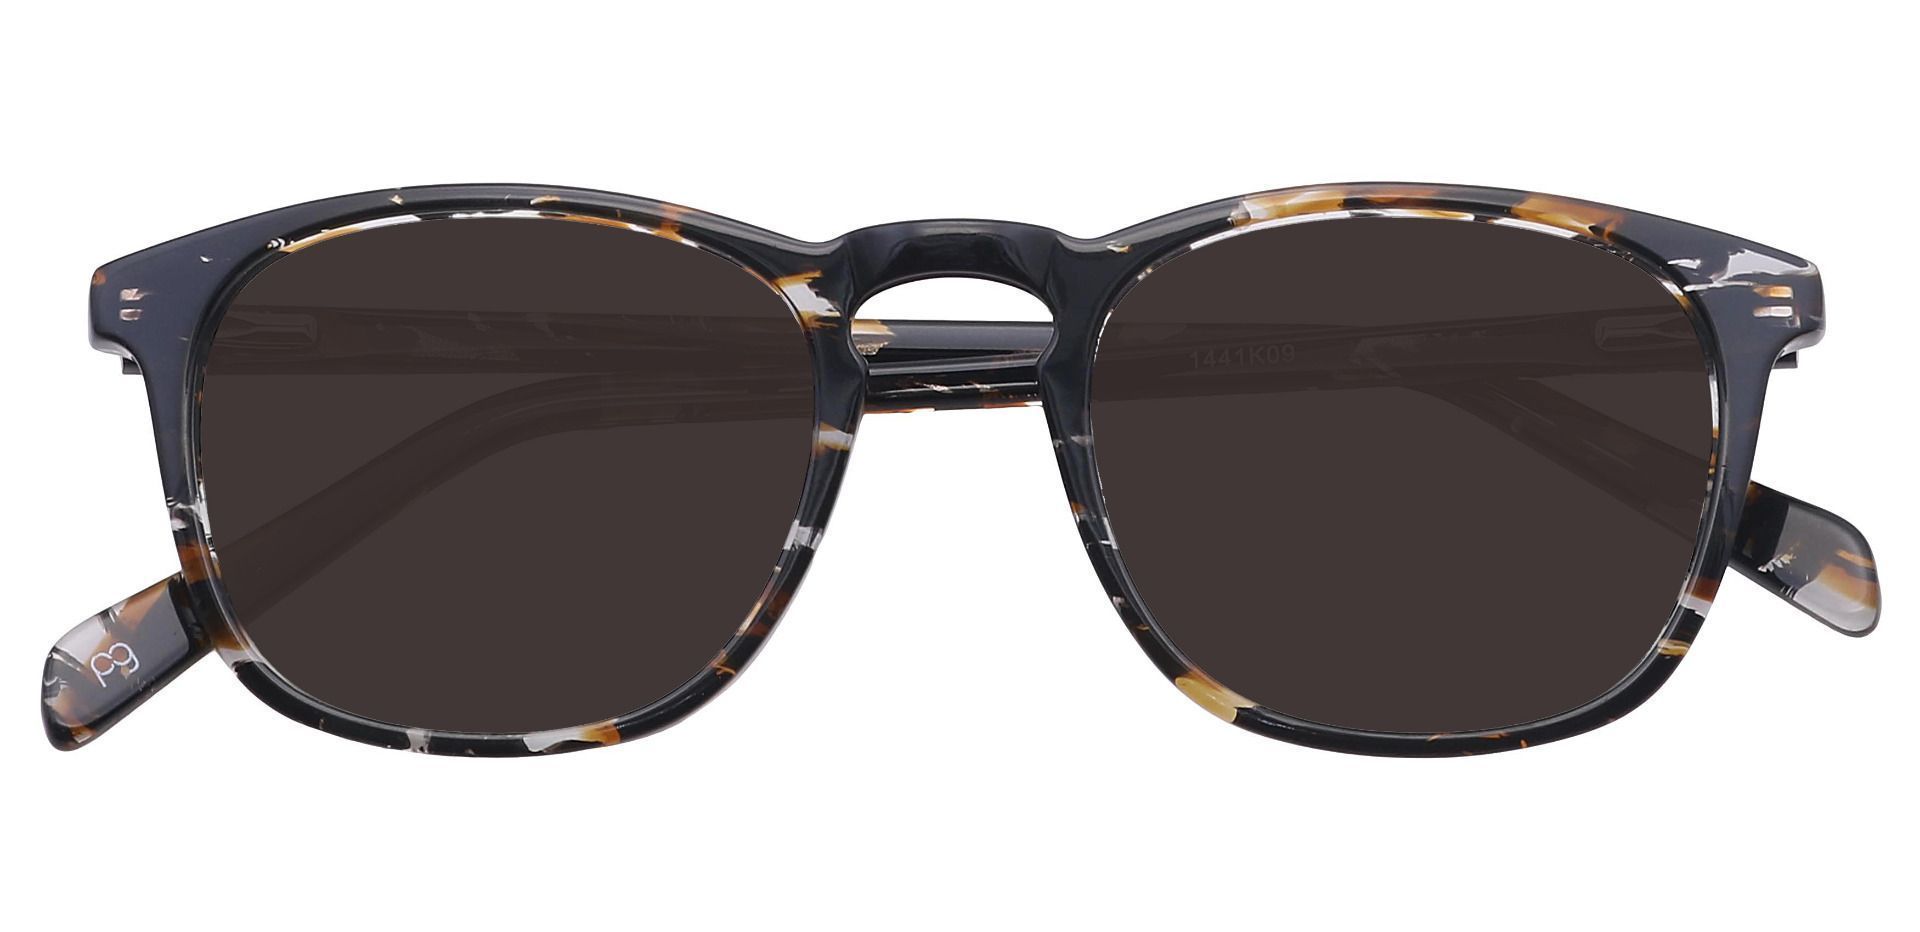 Venti Square Non-Rx Sunglasses - Brown Frame With Brown Lenses | Women ...